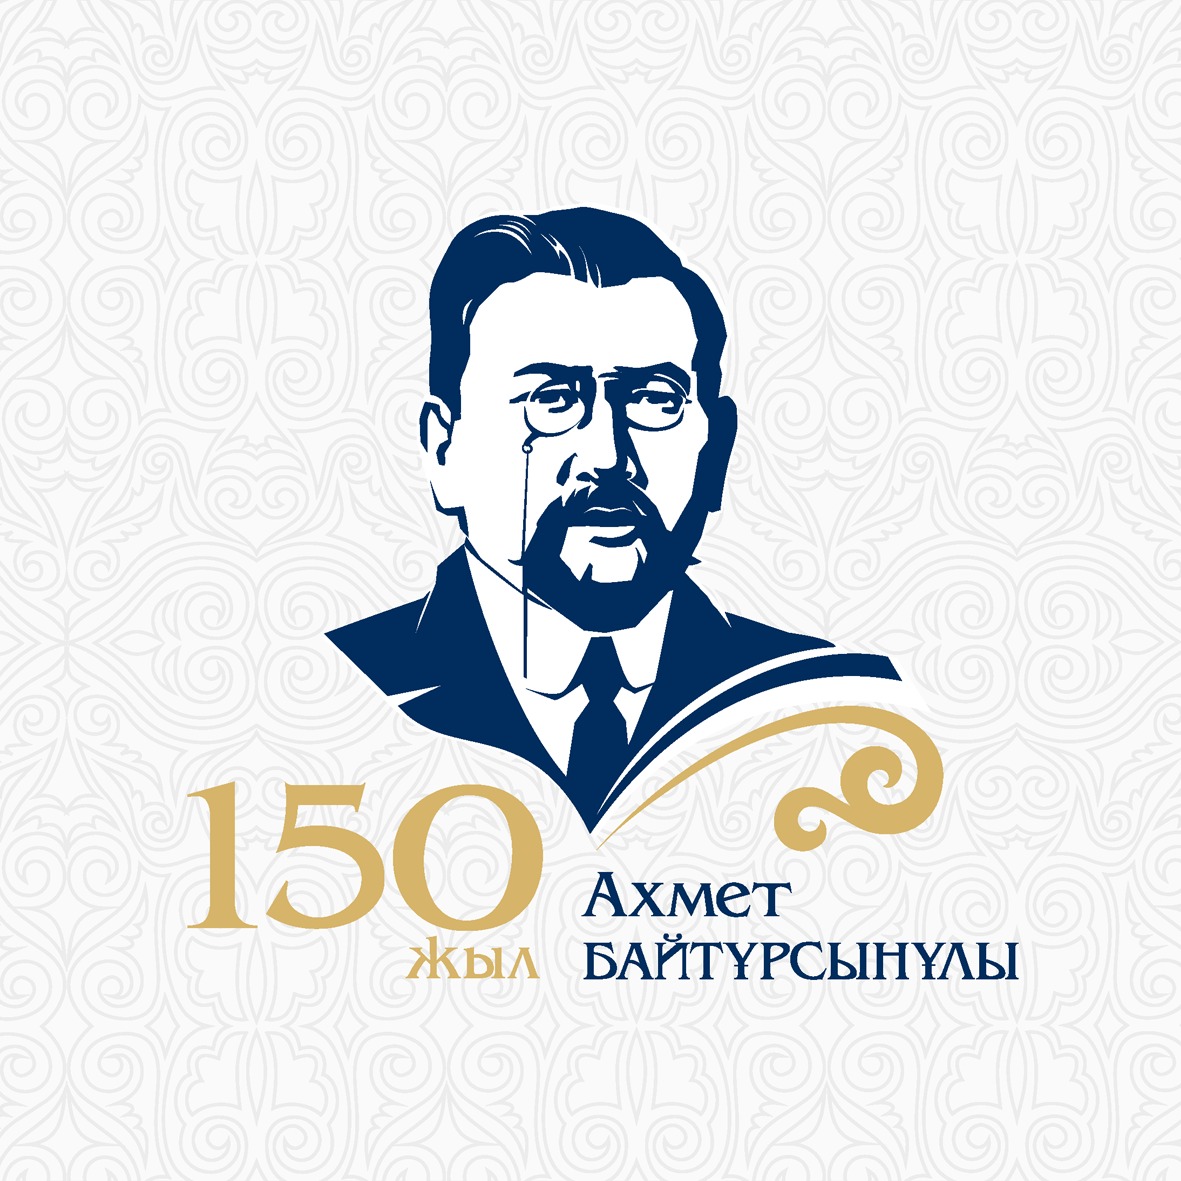 Павлодар облысы бойынша Ахмет Байтұрсынұлының 150 жылдығына орай диктант жазу шарасы ұйымдастырылуда